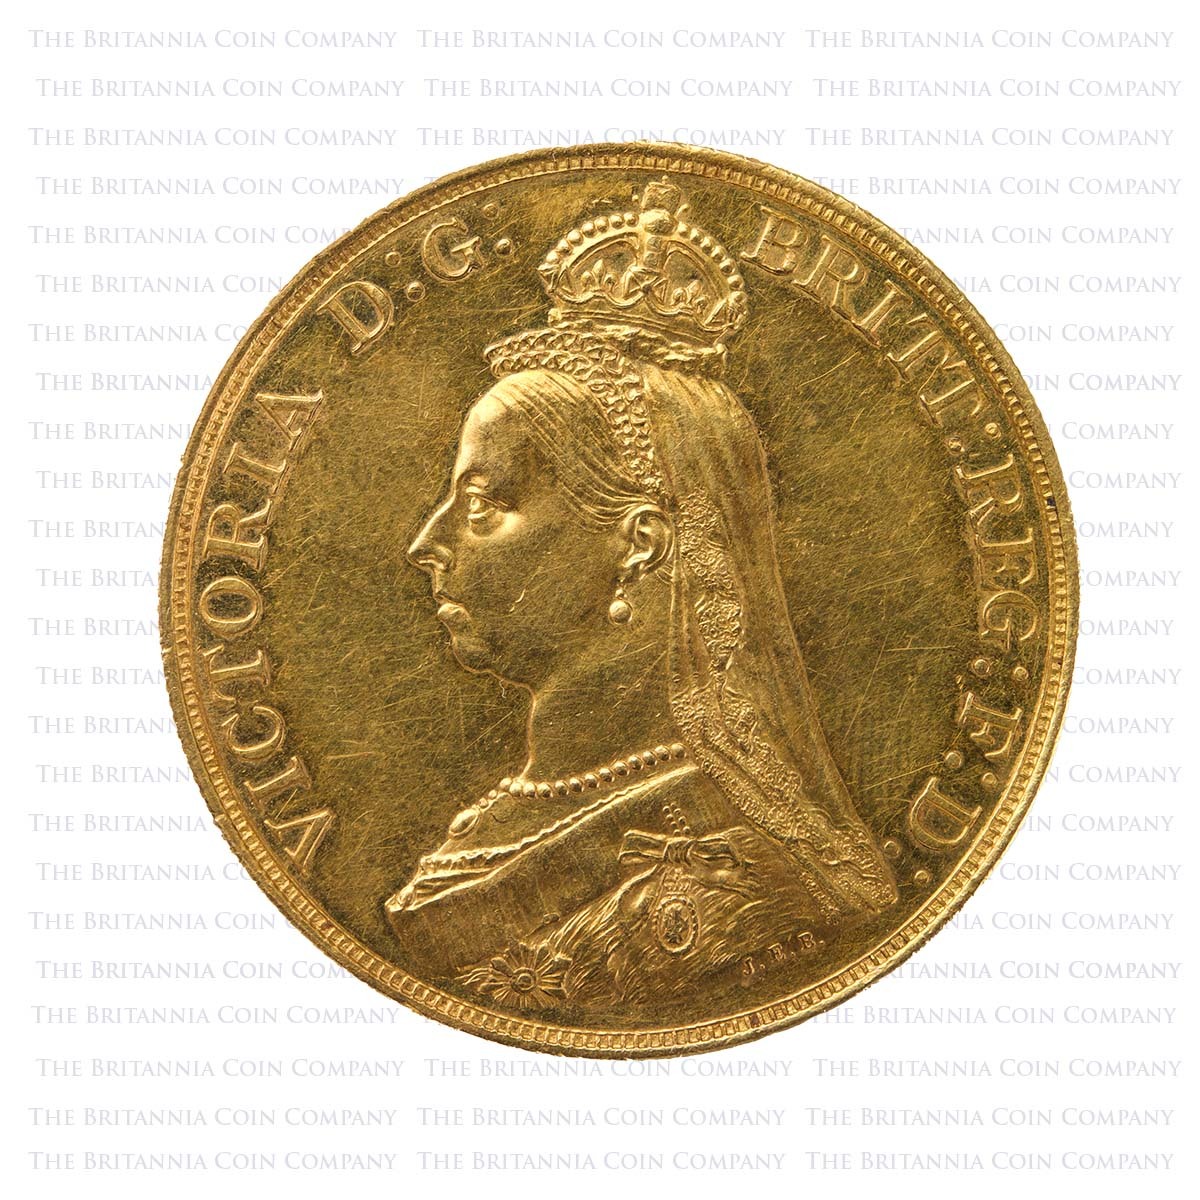 1887 Queen Victoria 11 Coin Specimen Set Golden Jubilee Gold